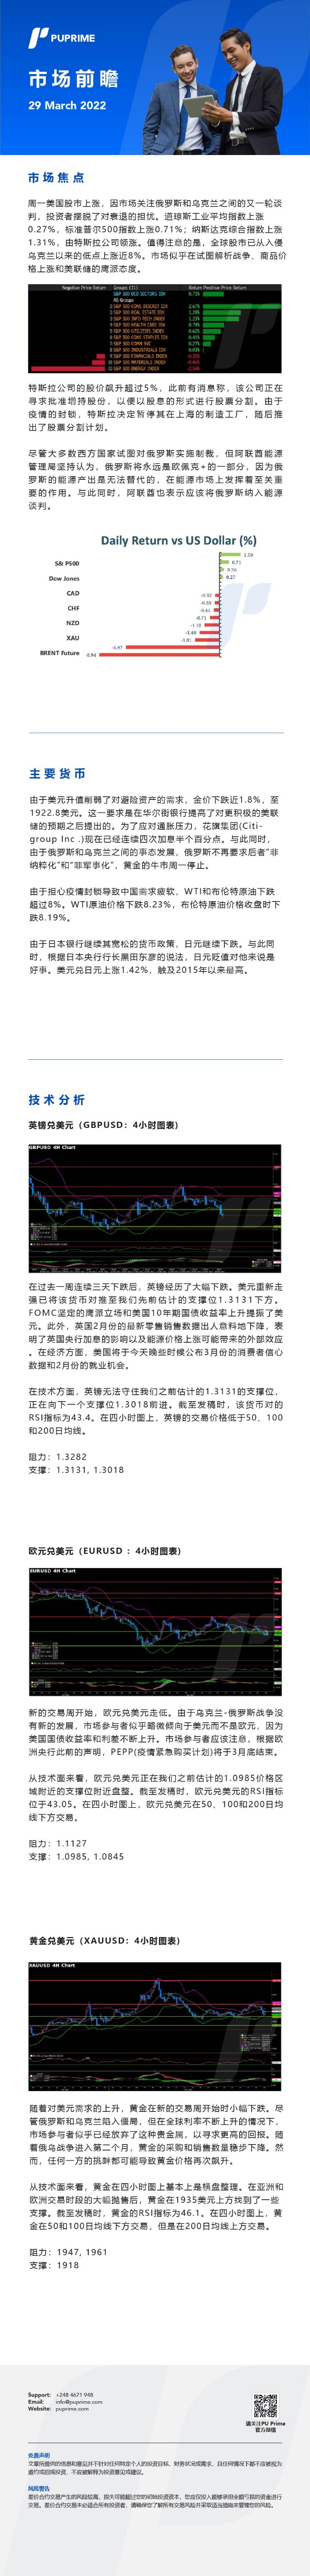 29032022 Daily Market Analysis__CHN.jpg